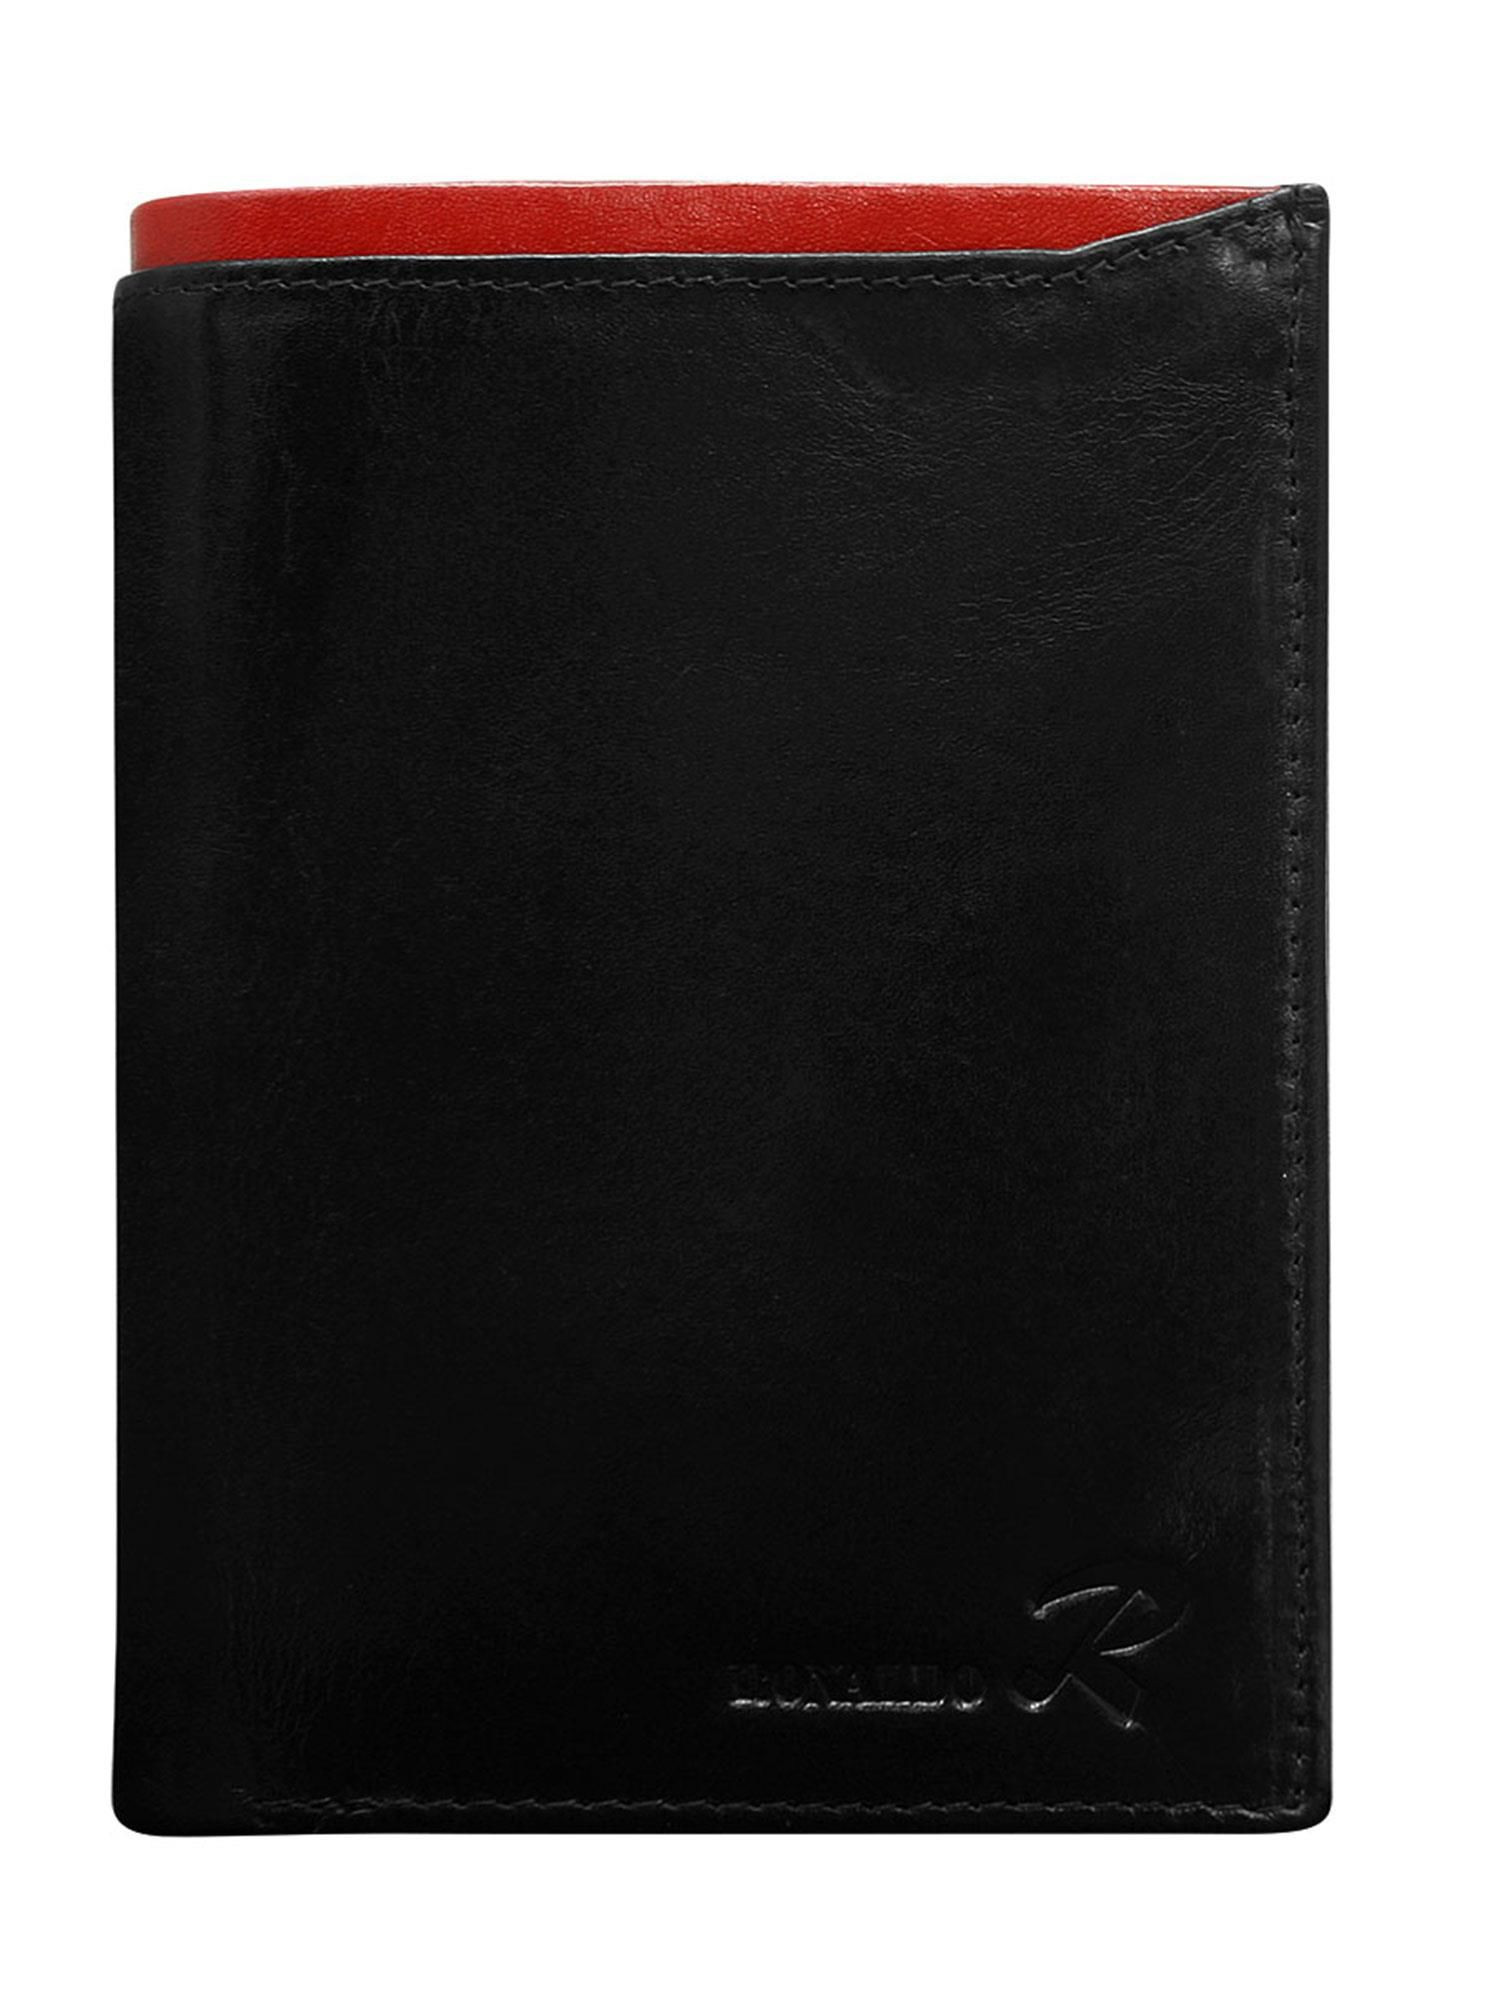 Peněženka CE PR černá a červená jedna velikost model 17355475 - FPrice